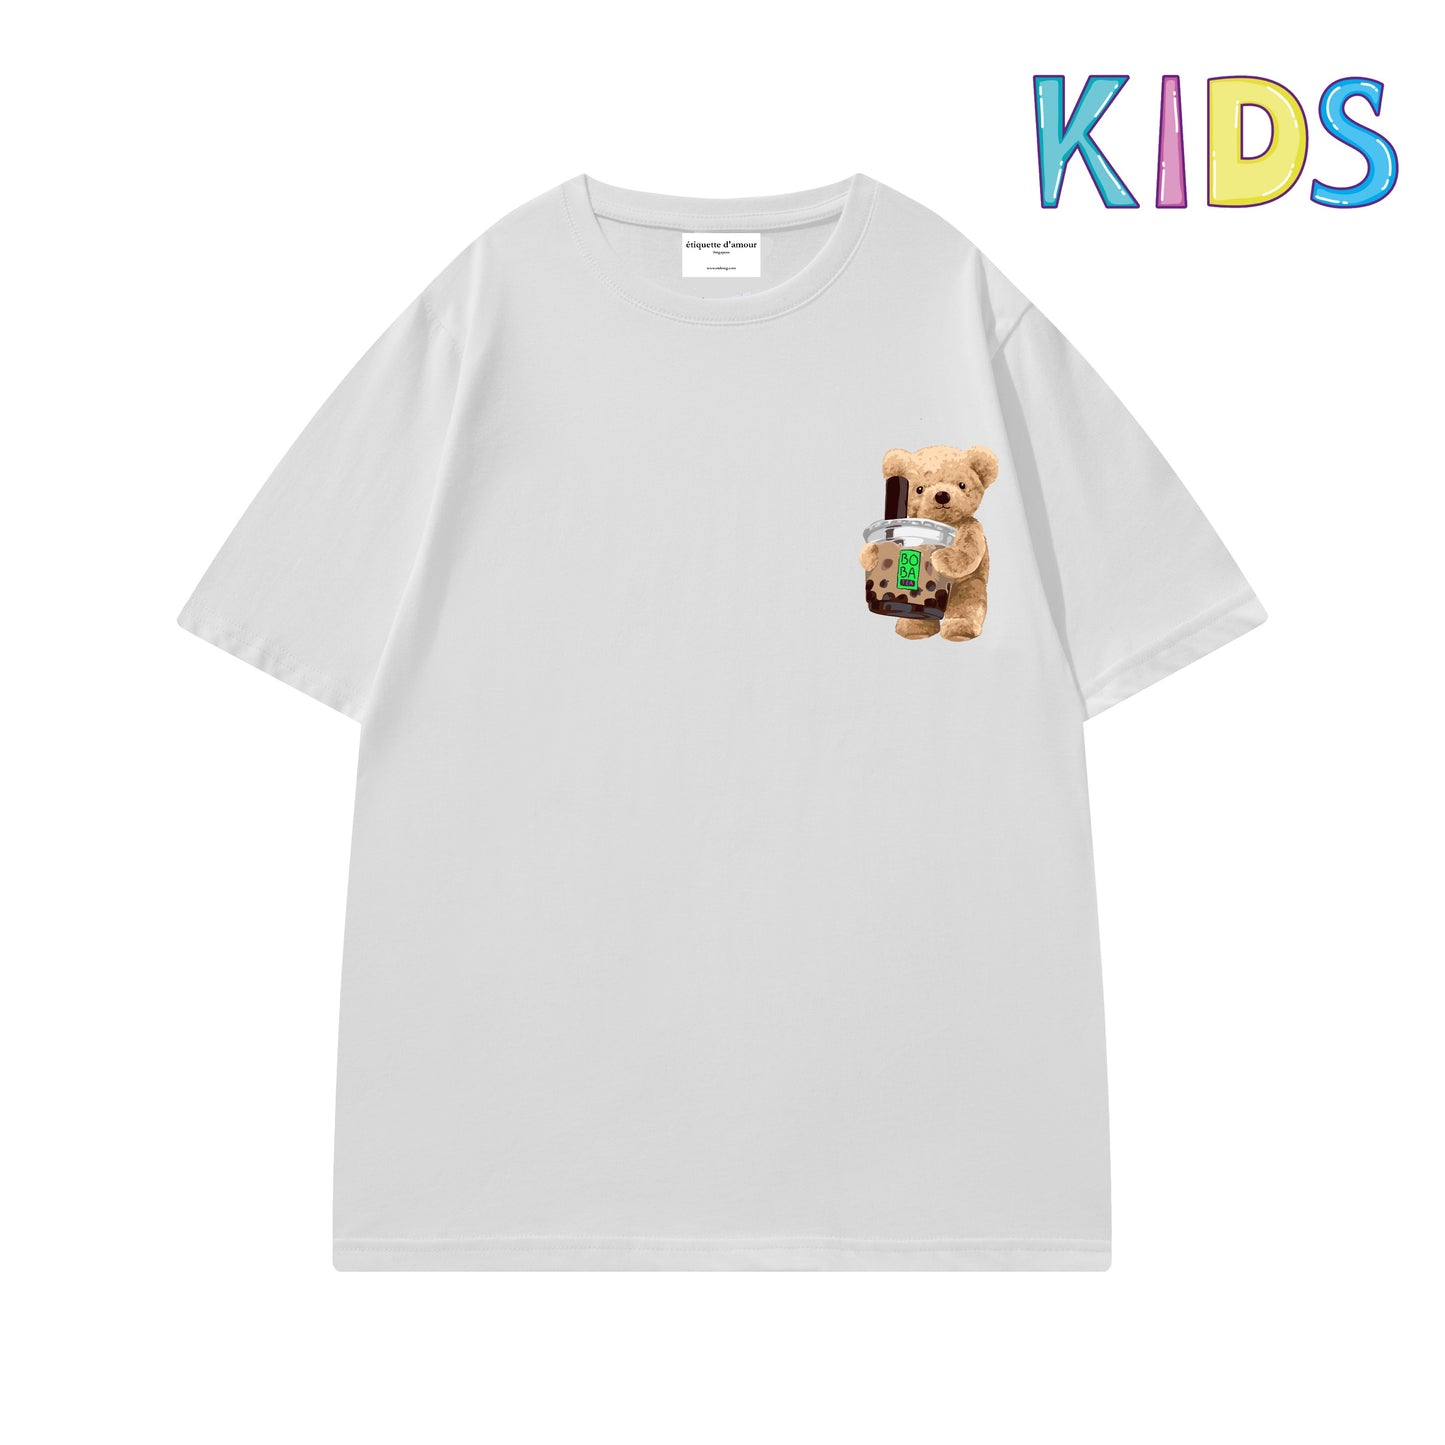 Etiquette Child T-Shirt - 0017 Boba Tea Bear